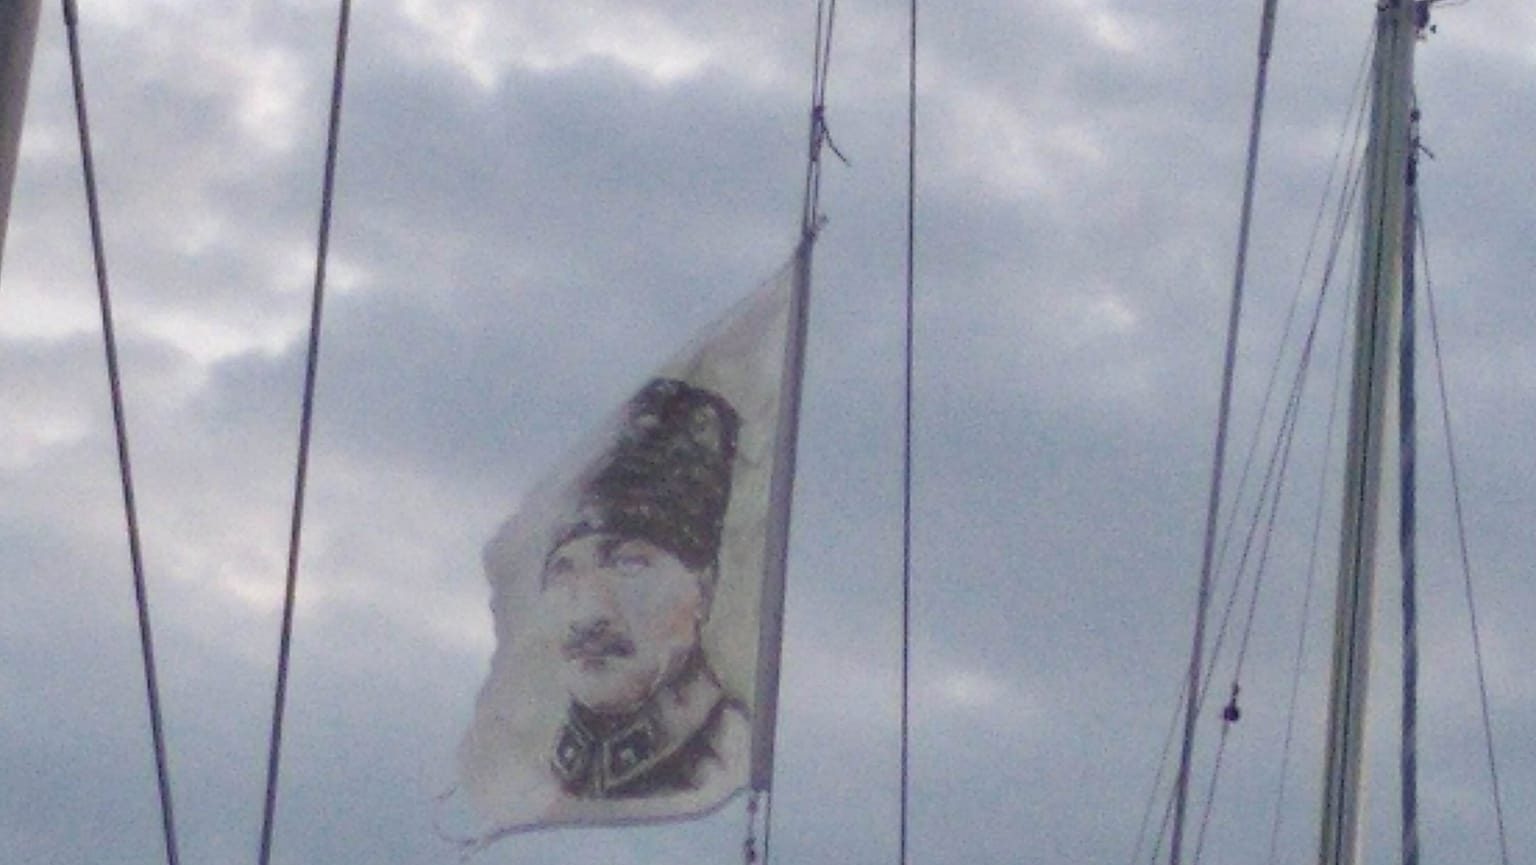 Σημαία του Κεμάλ ύψωσε τουρκικό τουριστικό σκάφος στο λιμάνι της Μυτιλήνης